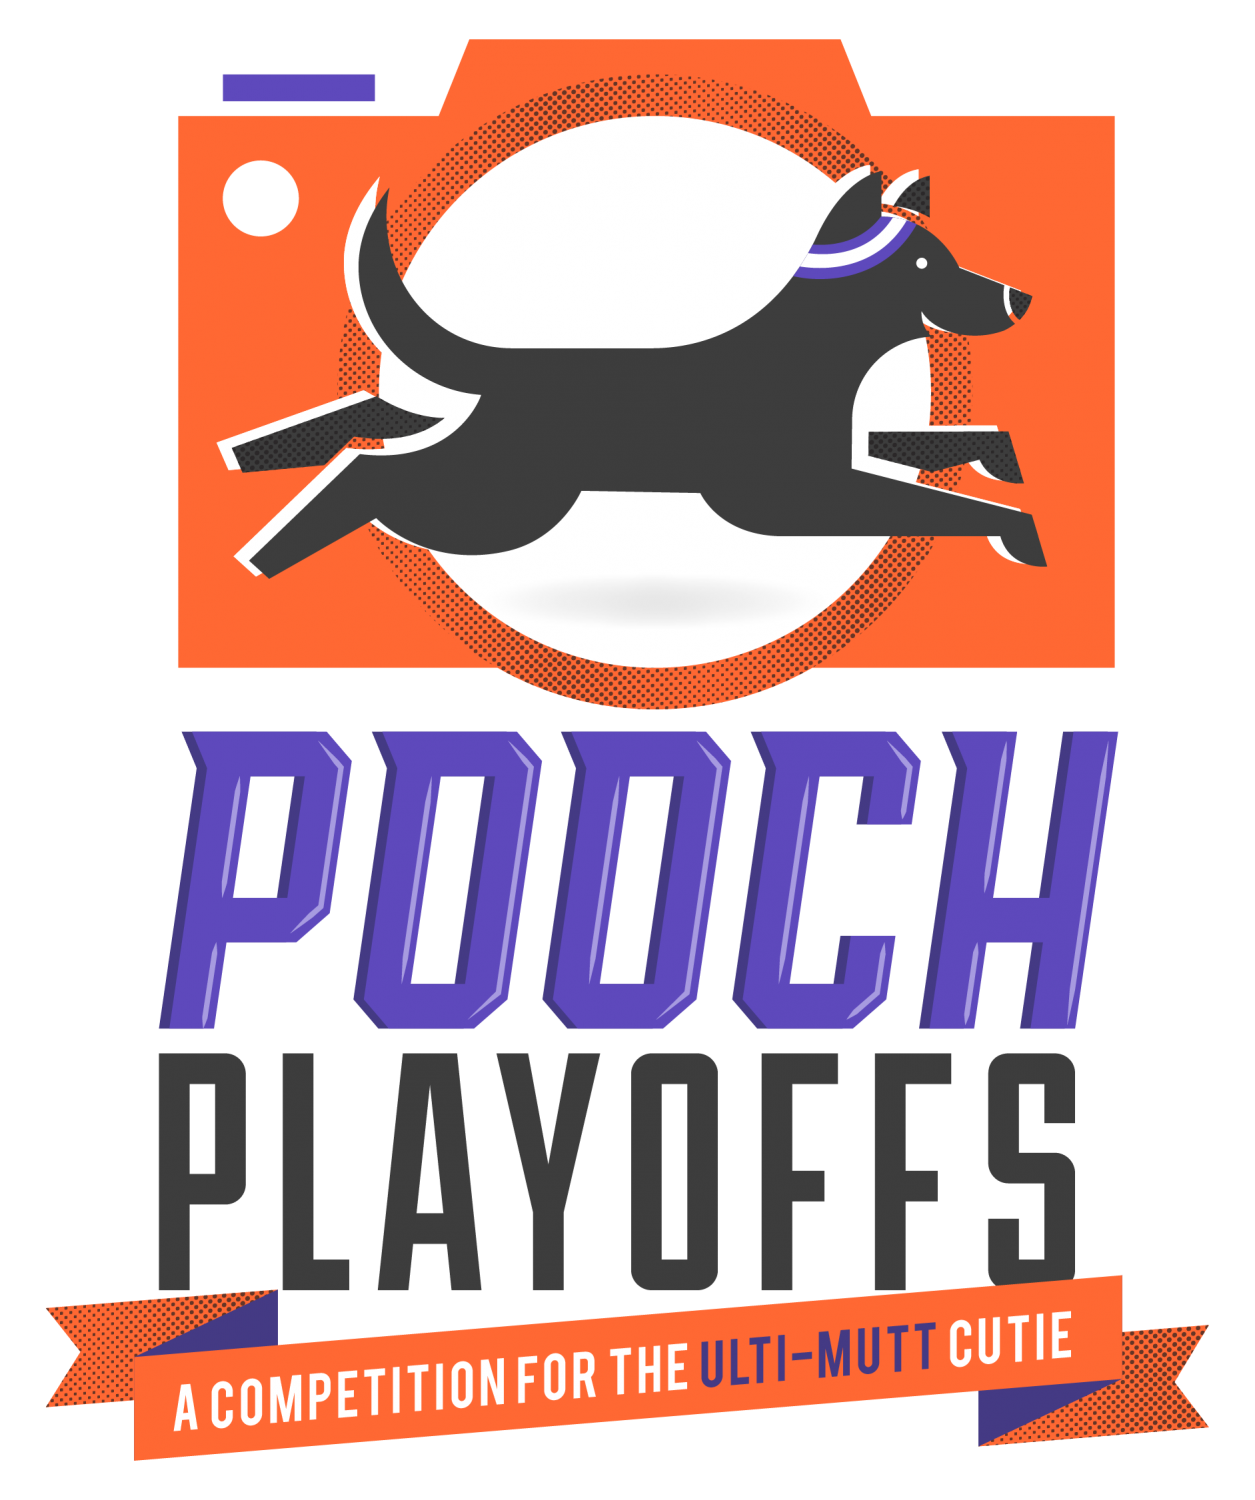 The 2021 Pooch Playoffs 